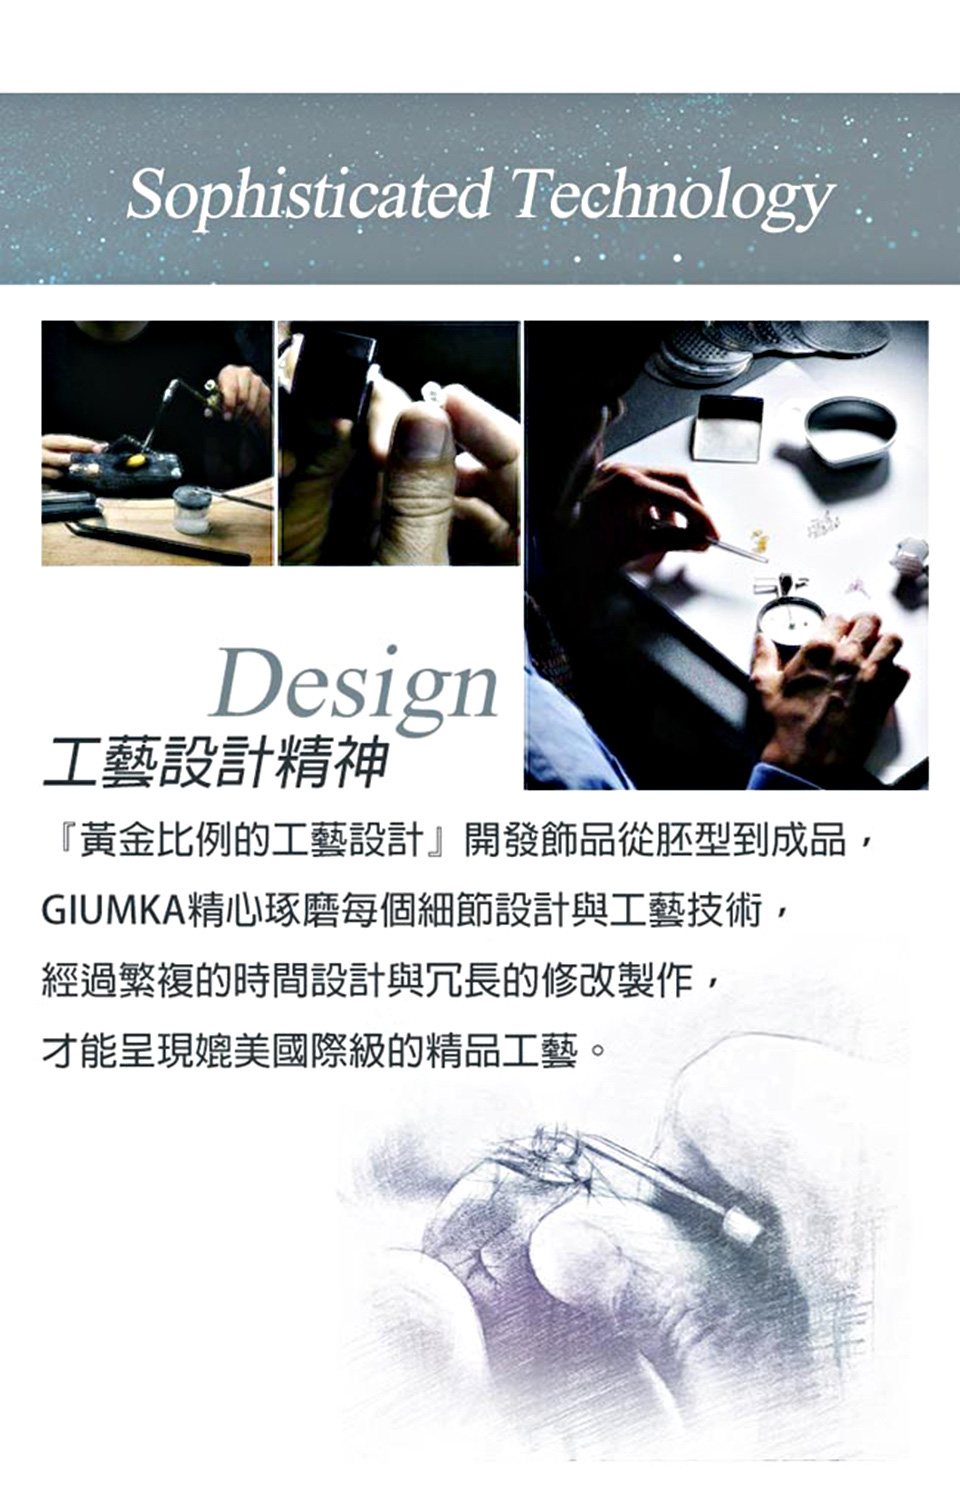 GIUMKAdesign.jpg?t=1515375721091